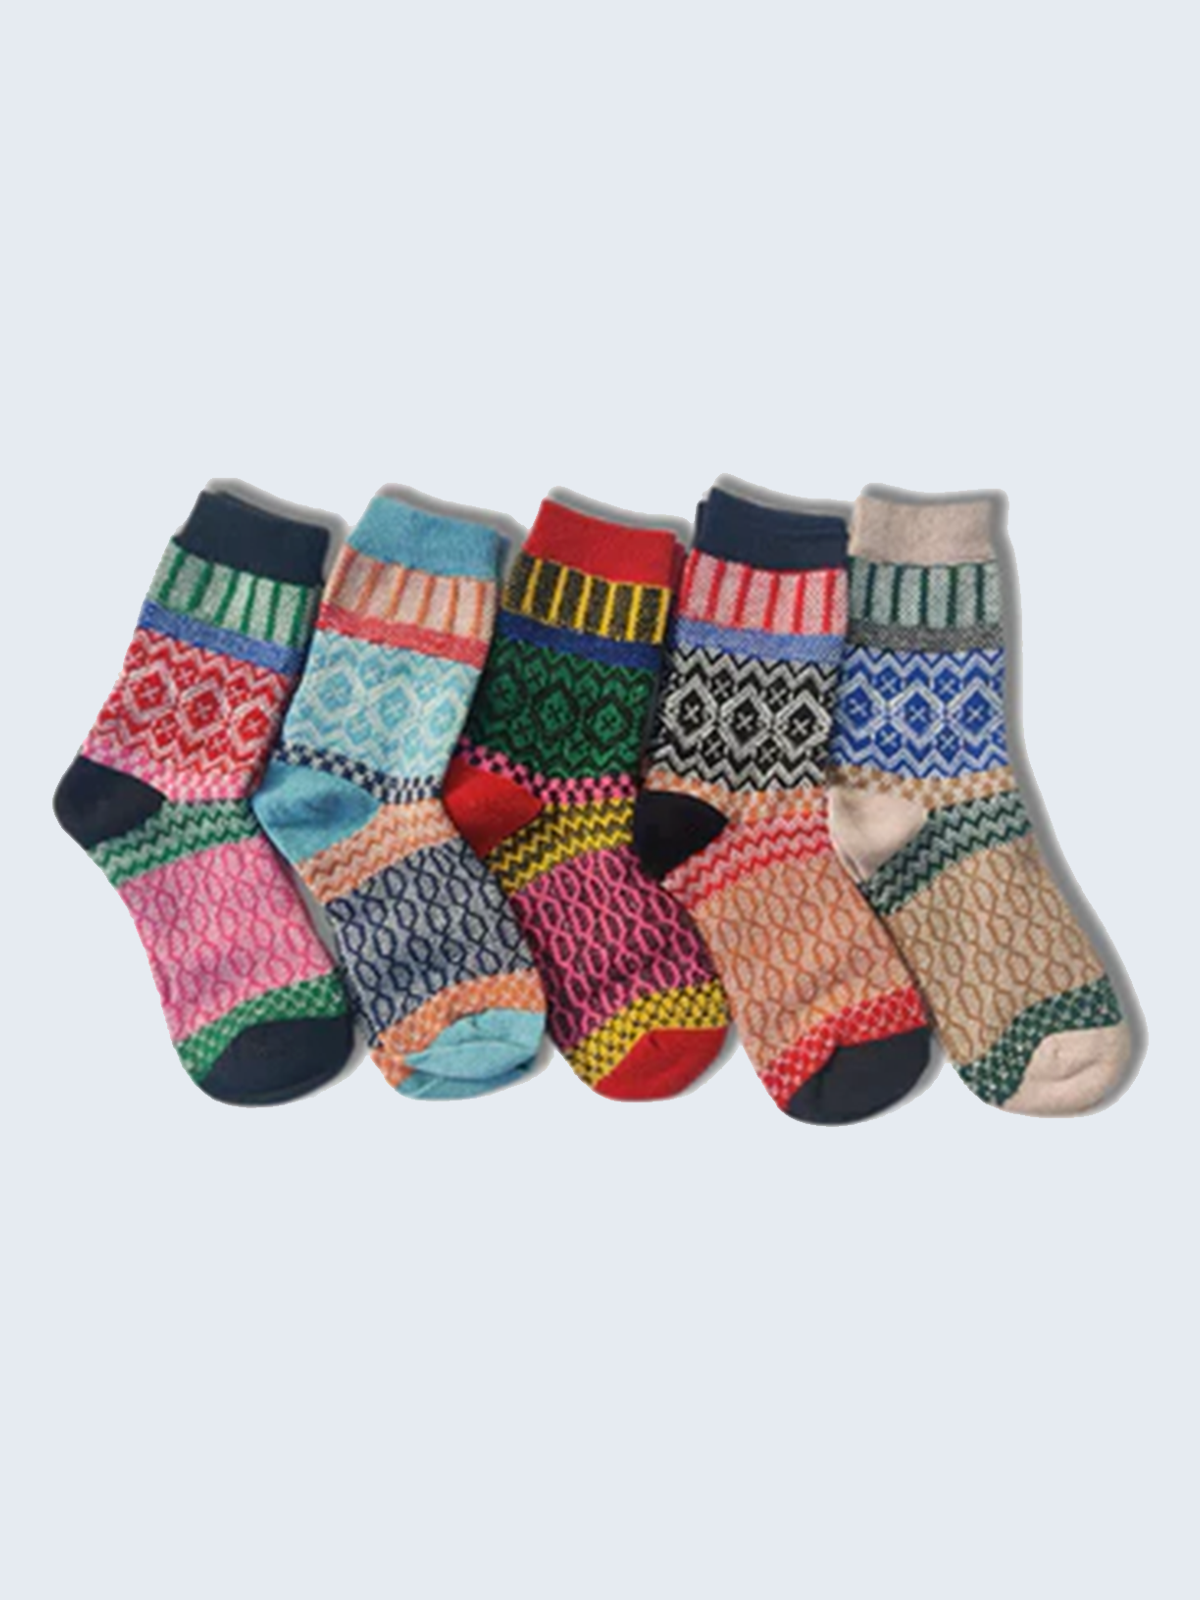 5 Pairs of Multipattern Wool Socks